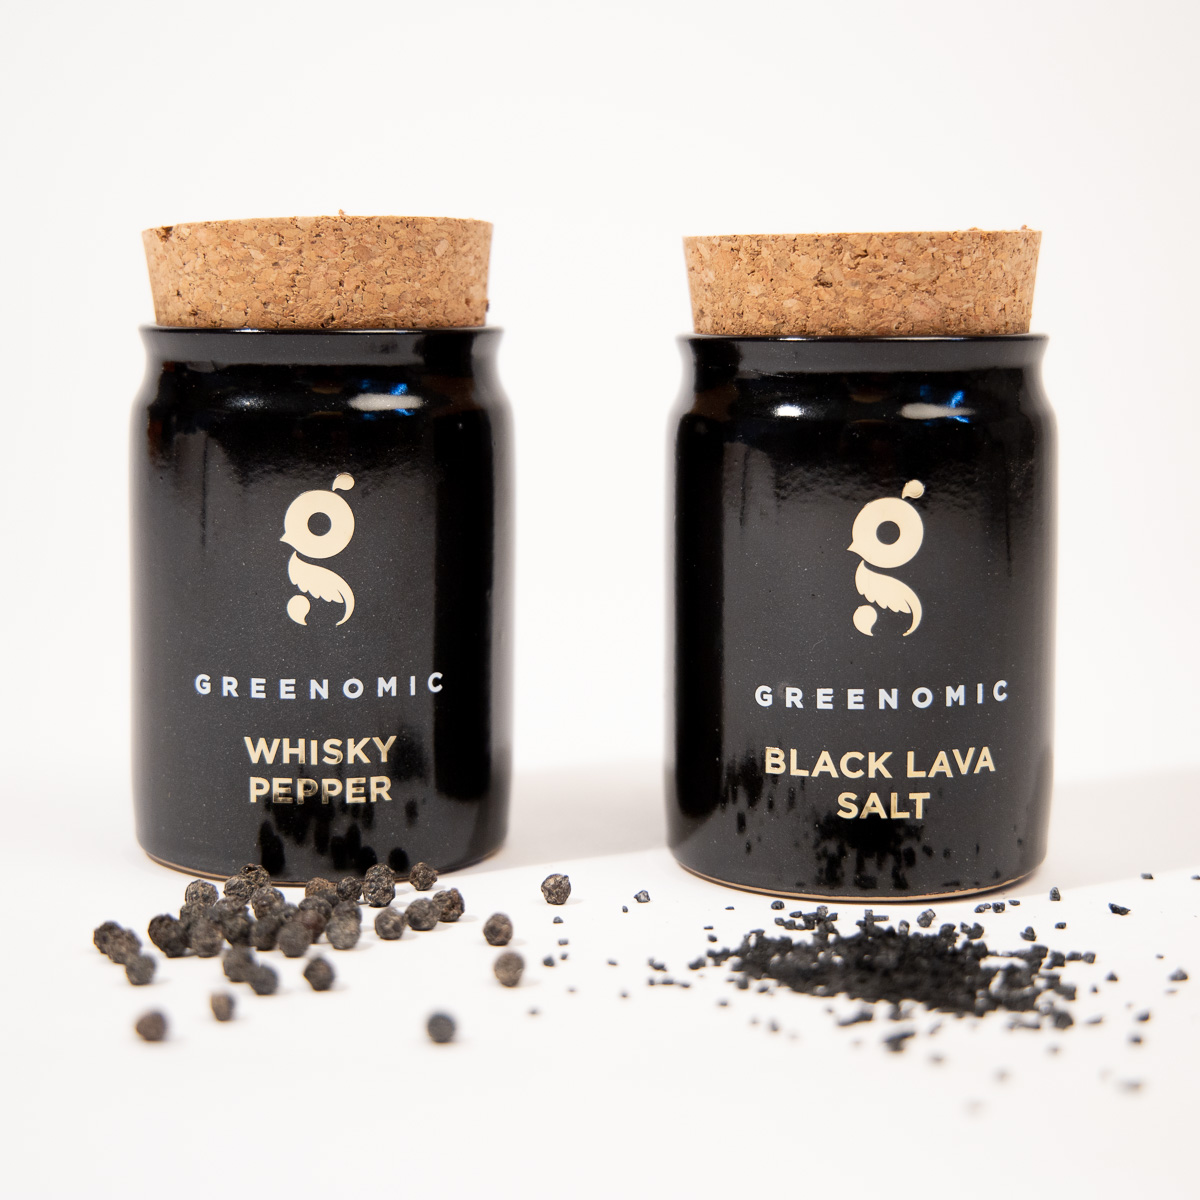 Black Lava Salt and Whisky Pepper